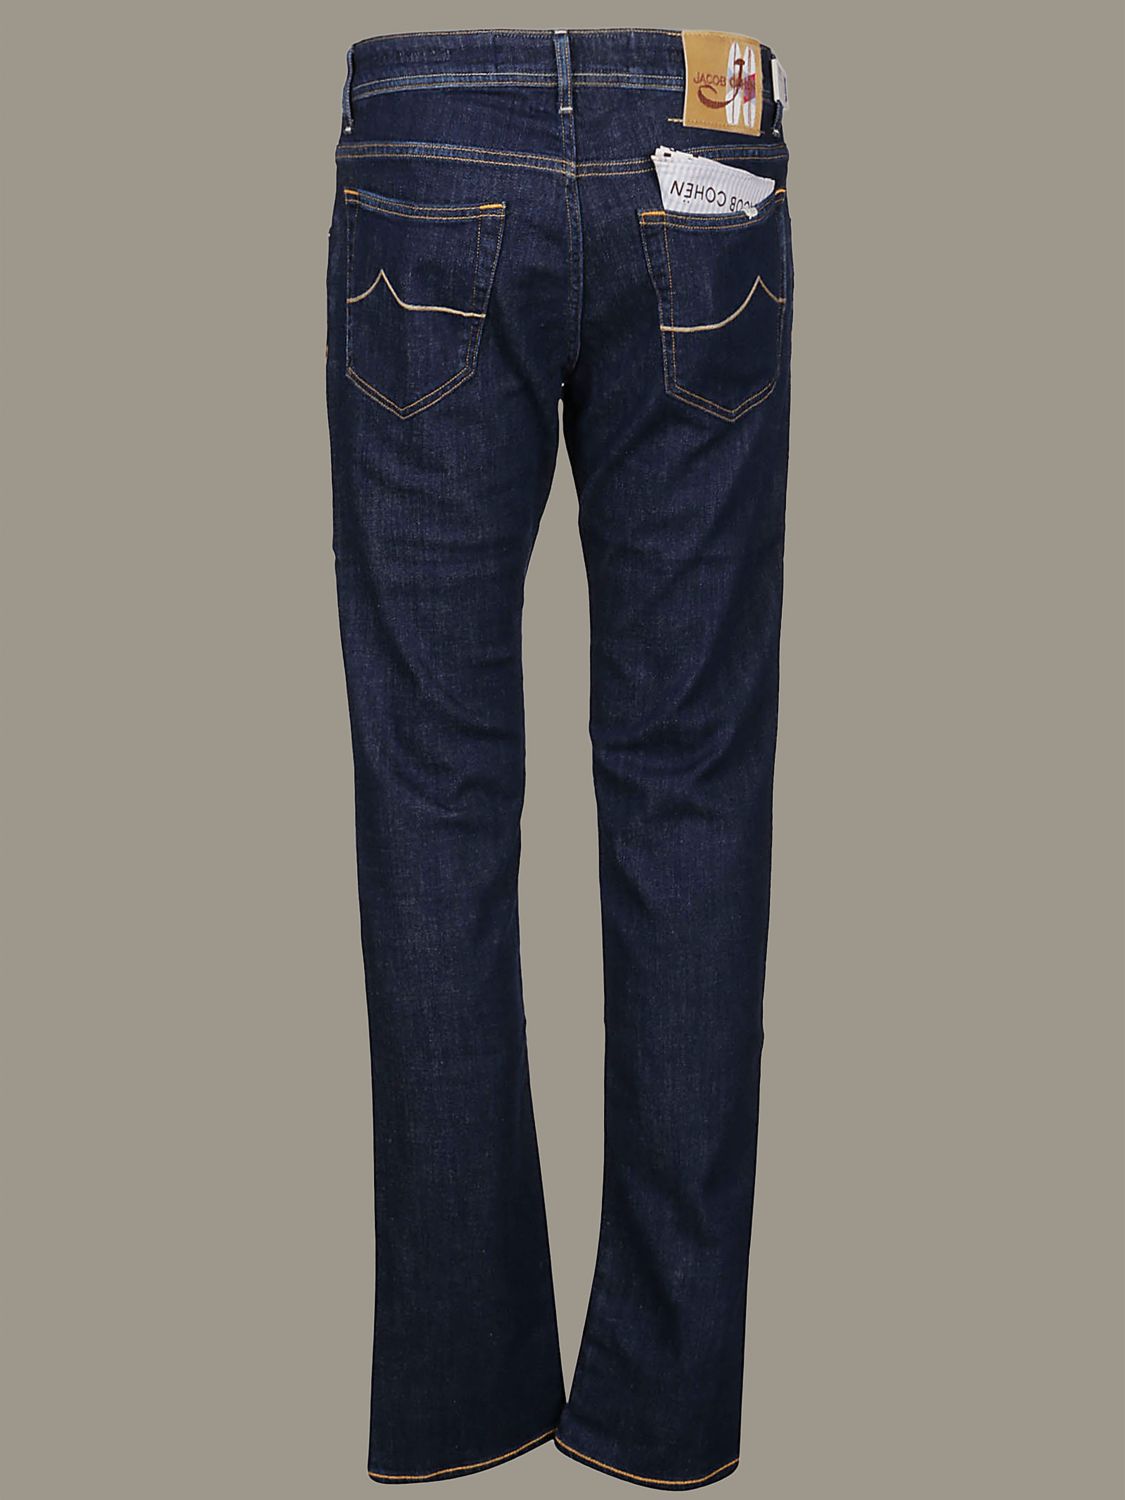 jacob cohen jeans online